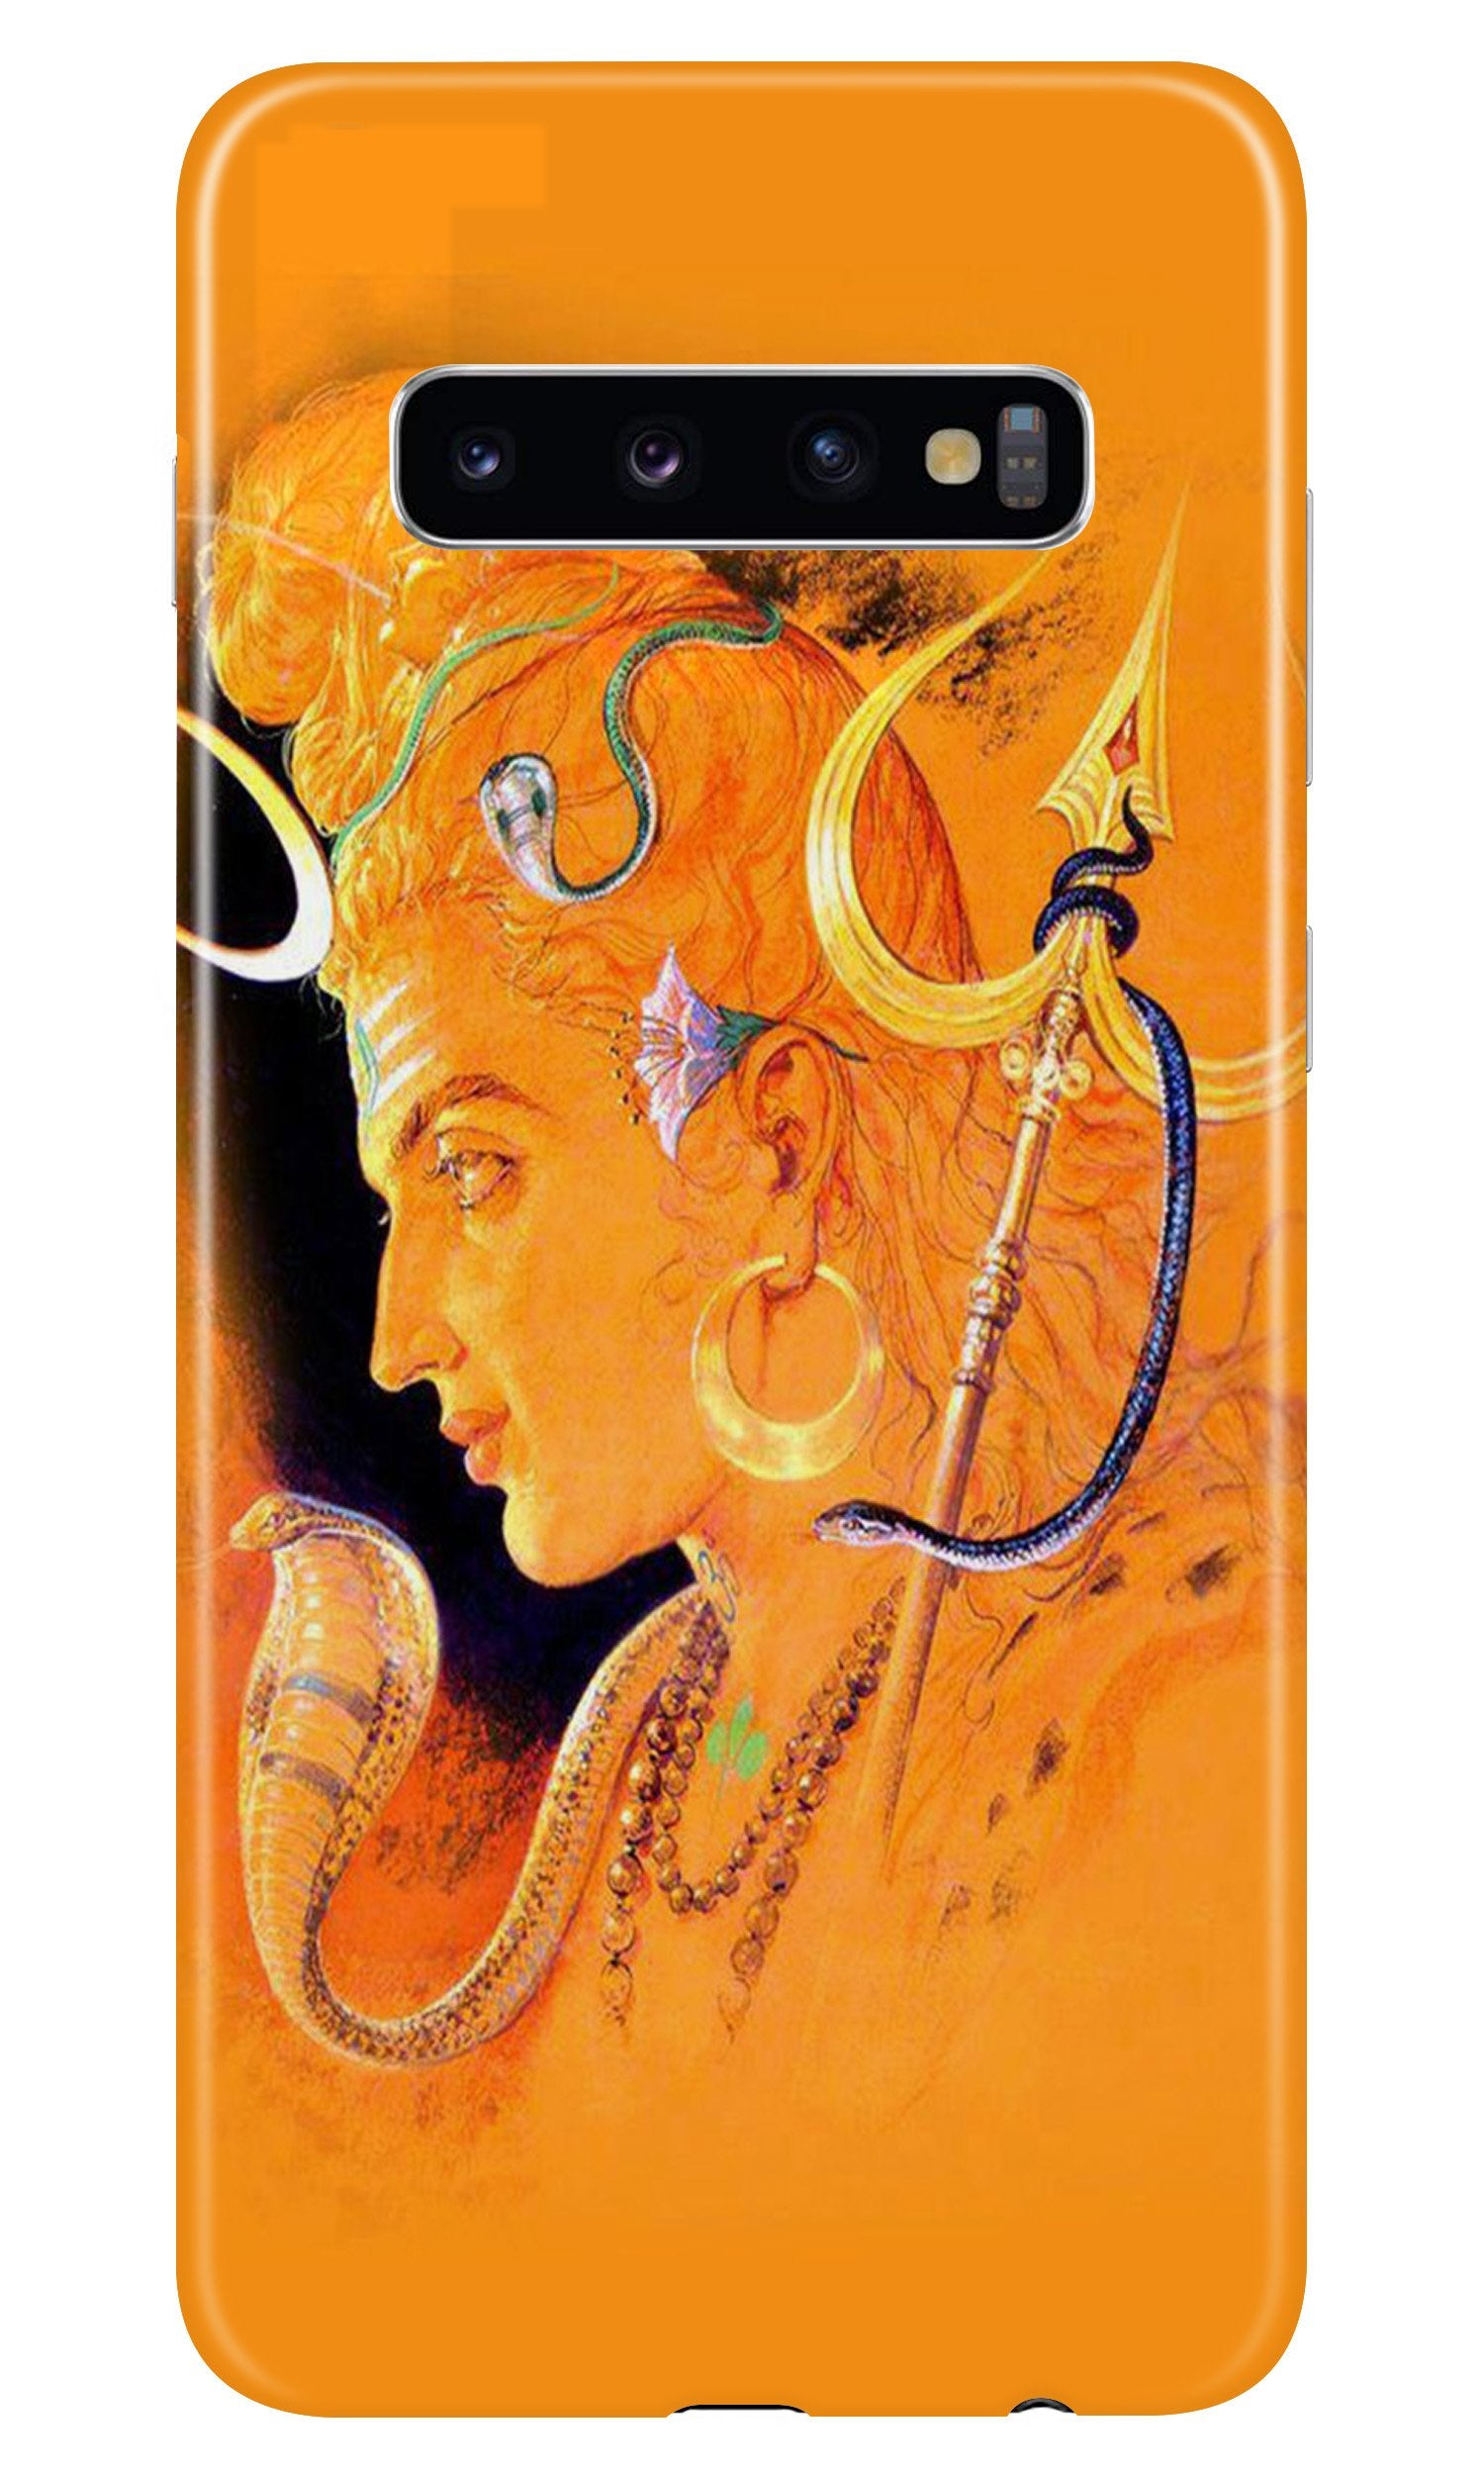 Lord Shiva Case for Samsung Galaxy S10 (Design No. 293)